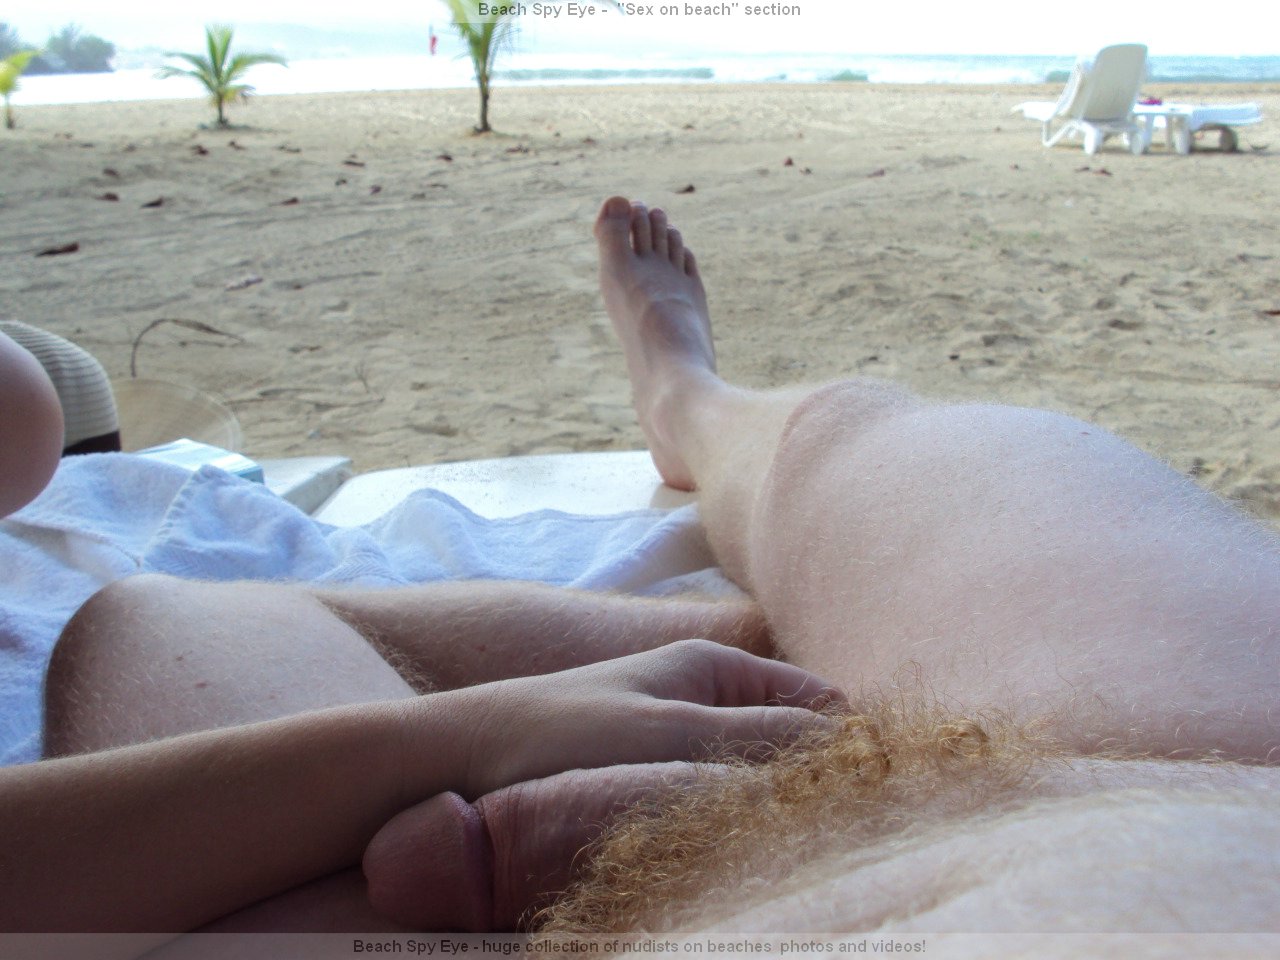 https://pbs.bulkjerk.com/39/3926/pictures/4032-7-voyeur-beach-sex.jpg